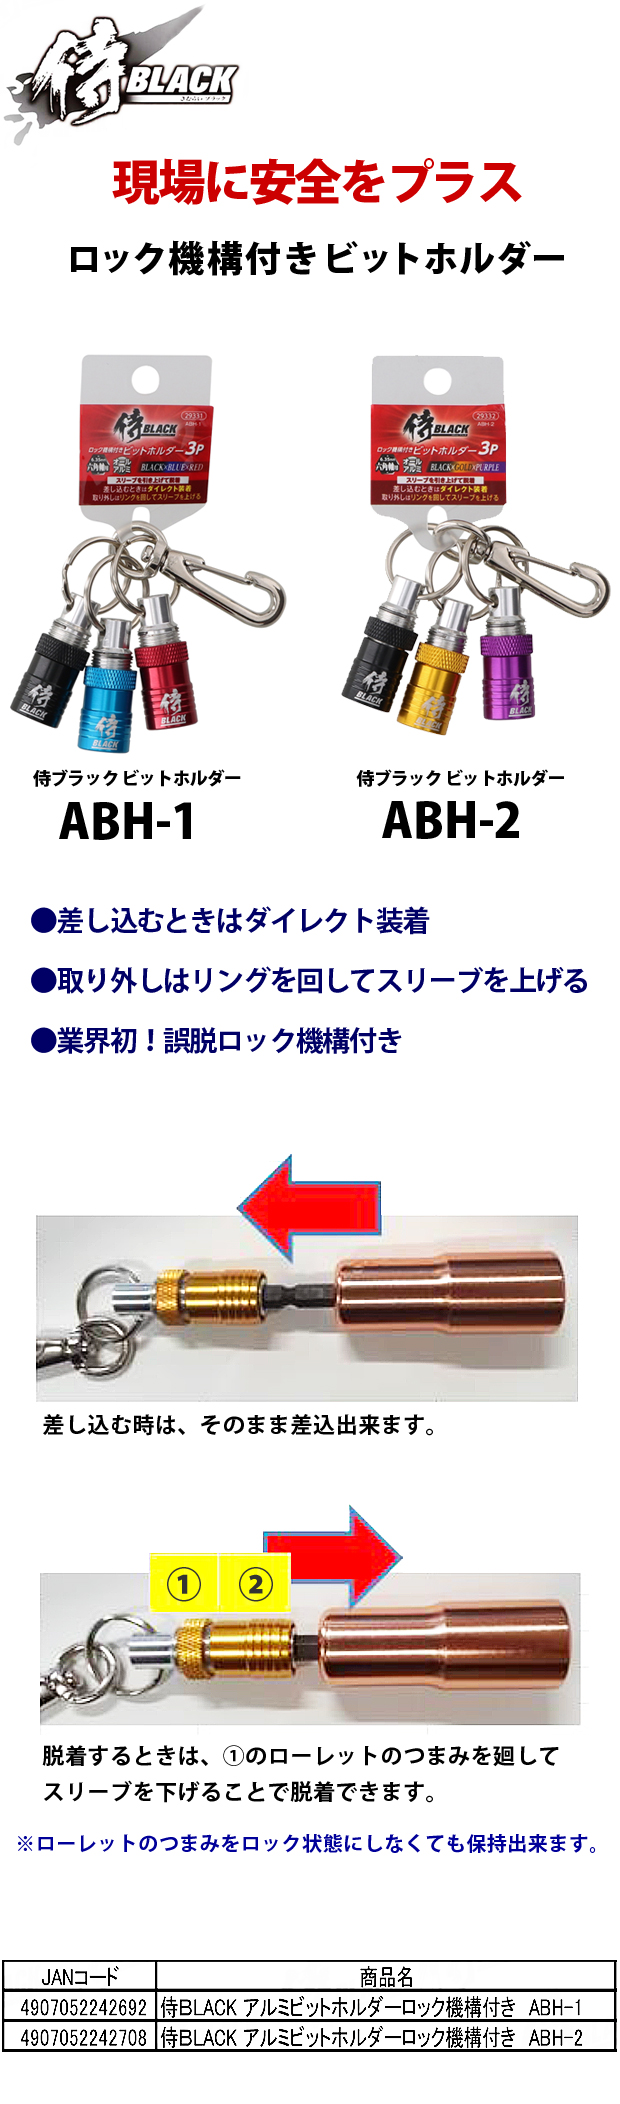 侍ブラック アルミビットホルダーロック機構付きABH-1/ABH-2